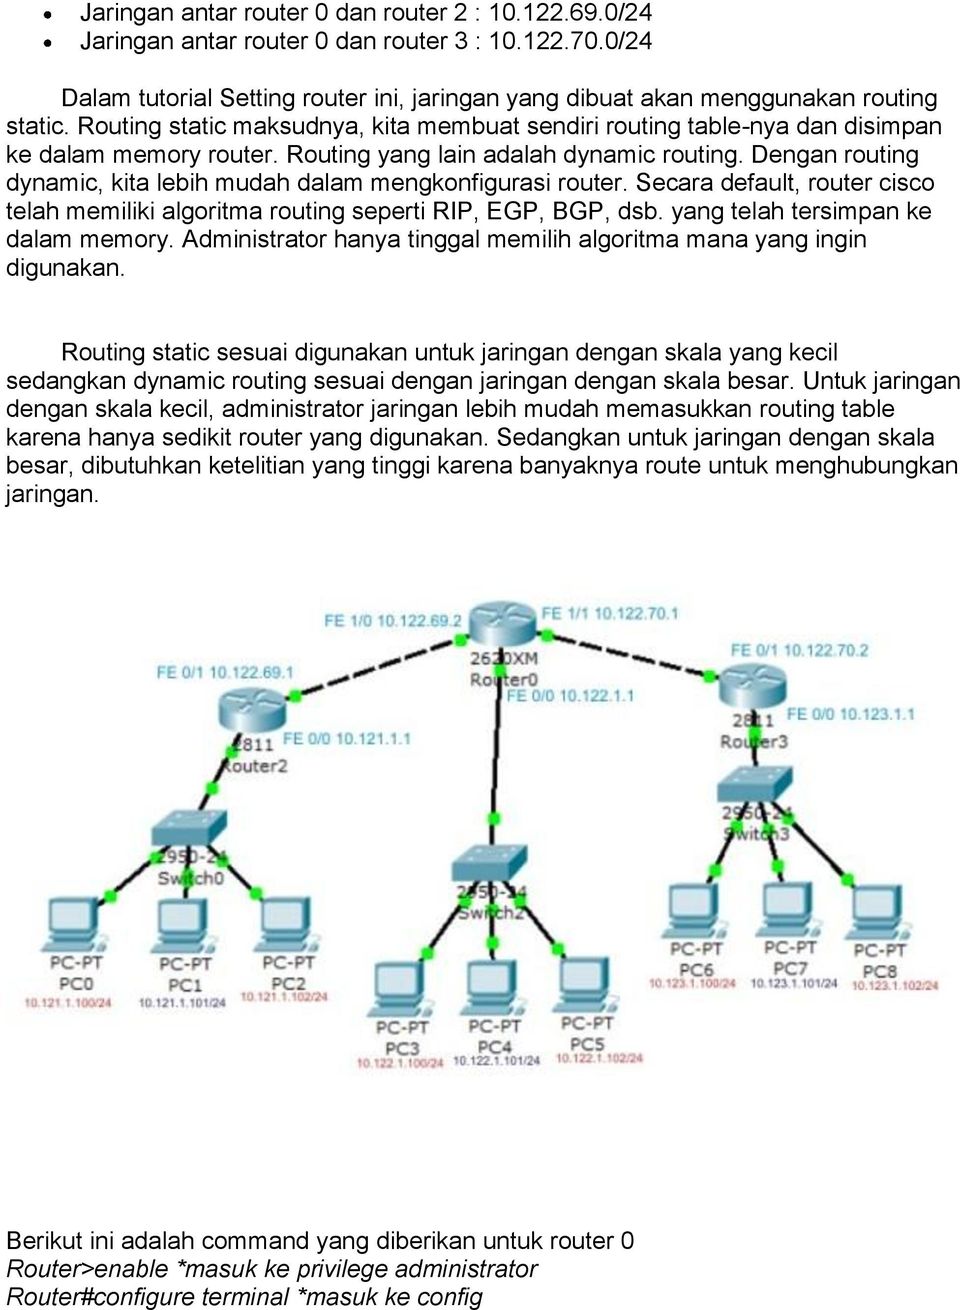 Dengan routing dynamic, kita lebih mudah dalam mengkonfigurasi router. Secara default, router cisco telah memiliki algoritma routing seperti RIP, EGP, BGP, dsb. yang telah tersimpan ke dalam memory.